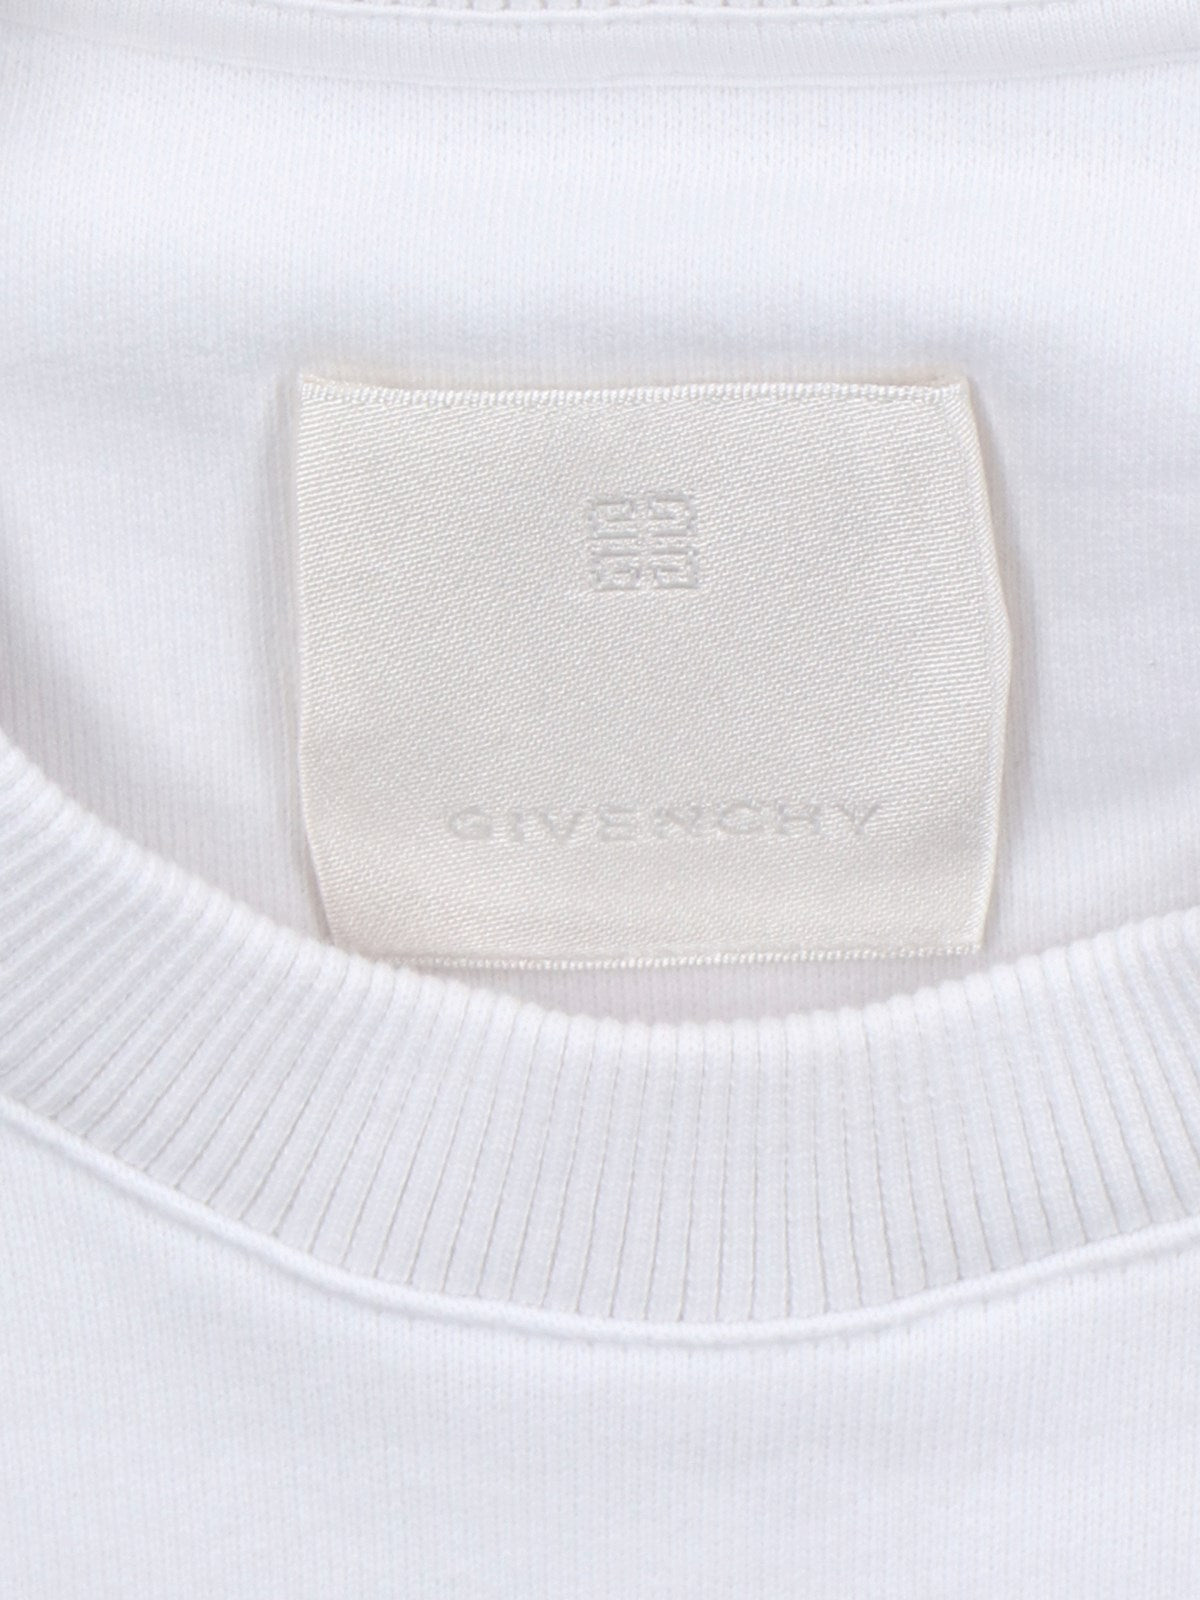 Givenchy Felpa girocollo logo